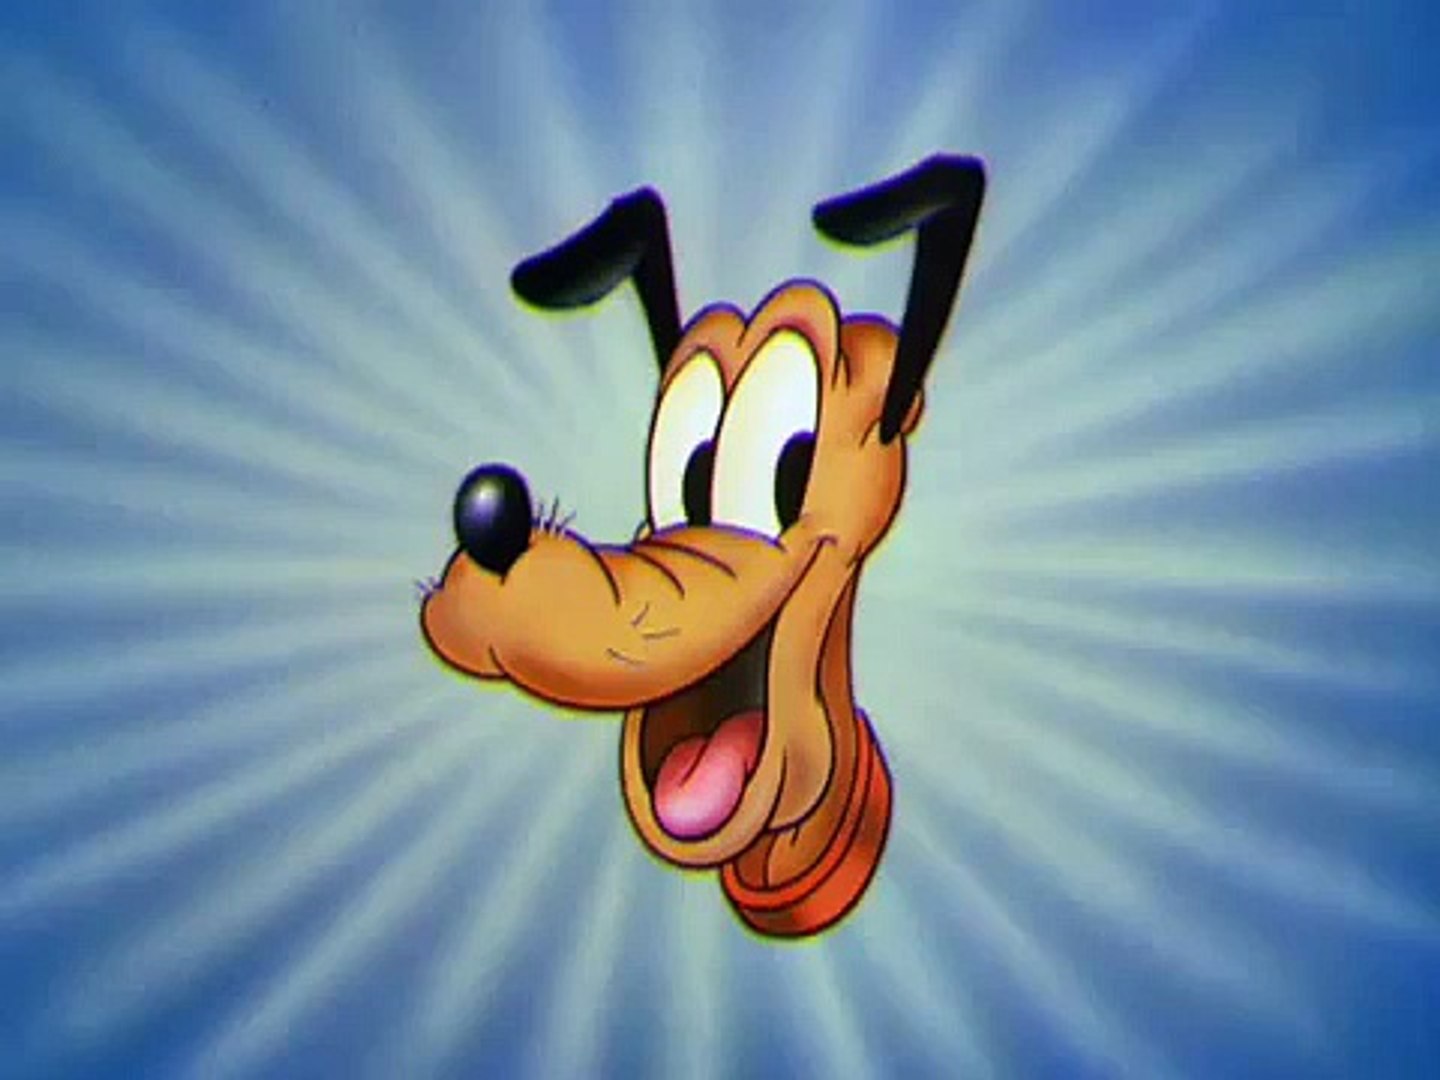 Desenhos antigos clássicos Disney, Pluto, Tico e Teco, FOOD FOR FEUDIN,  ep42 1 - video Dailymotion